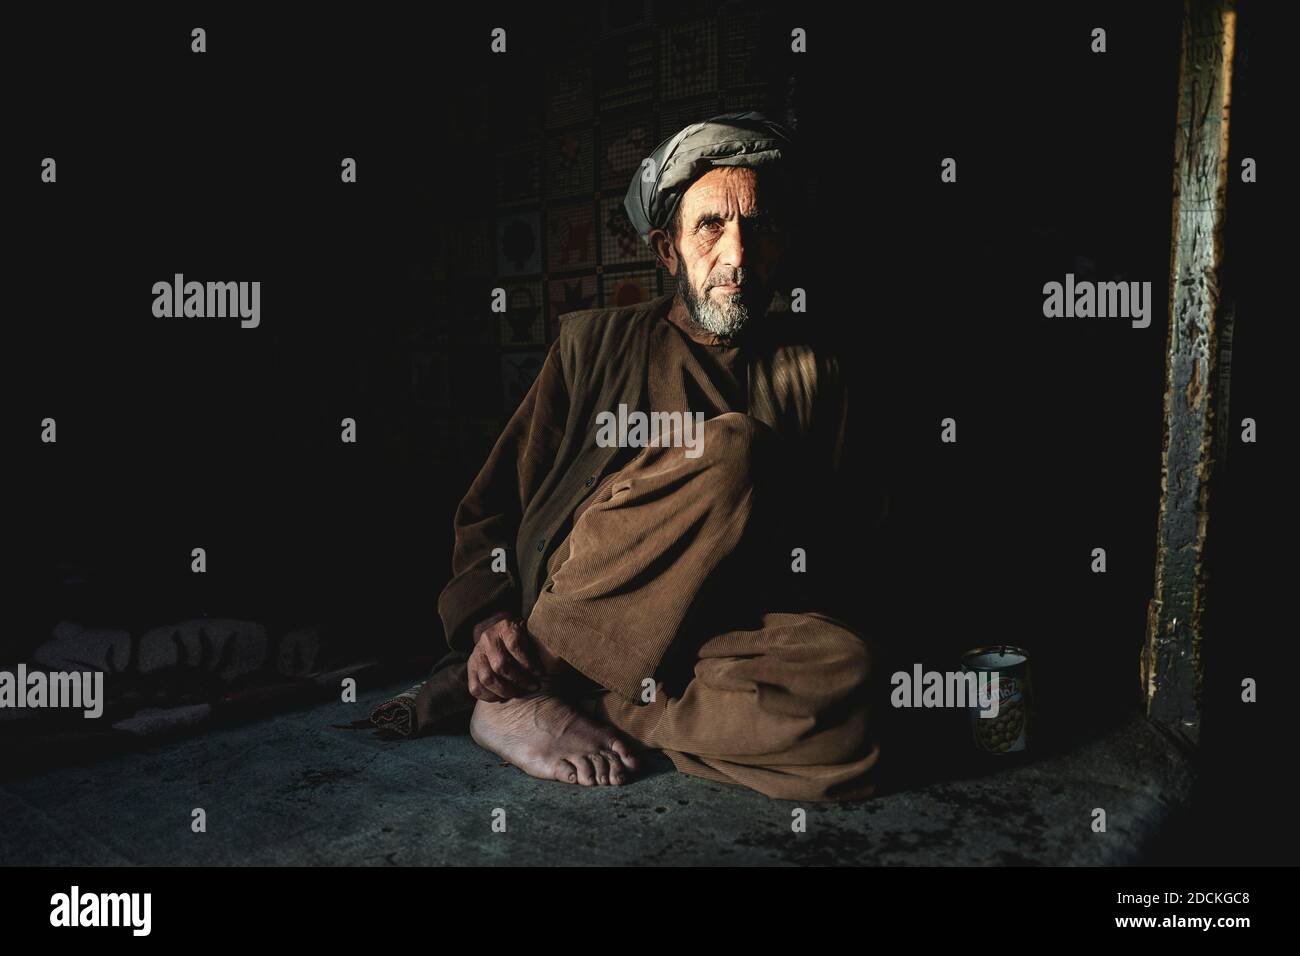 Negoziante seduto nella semoscurità sul pavimento del suo negozio, Ishkashim, Afghanistan Foto Stock